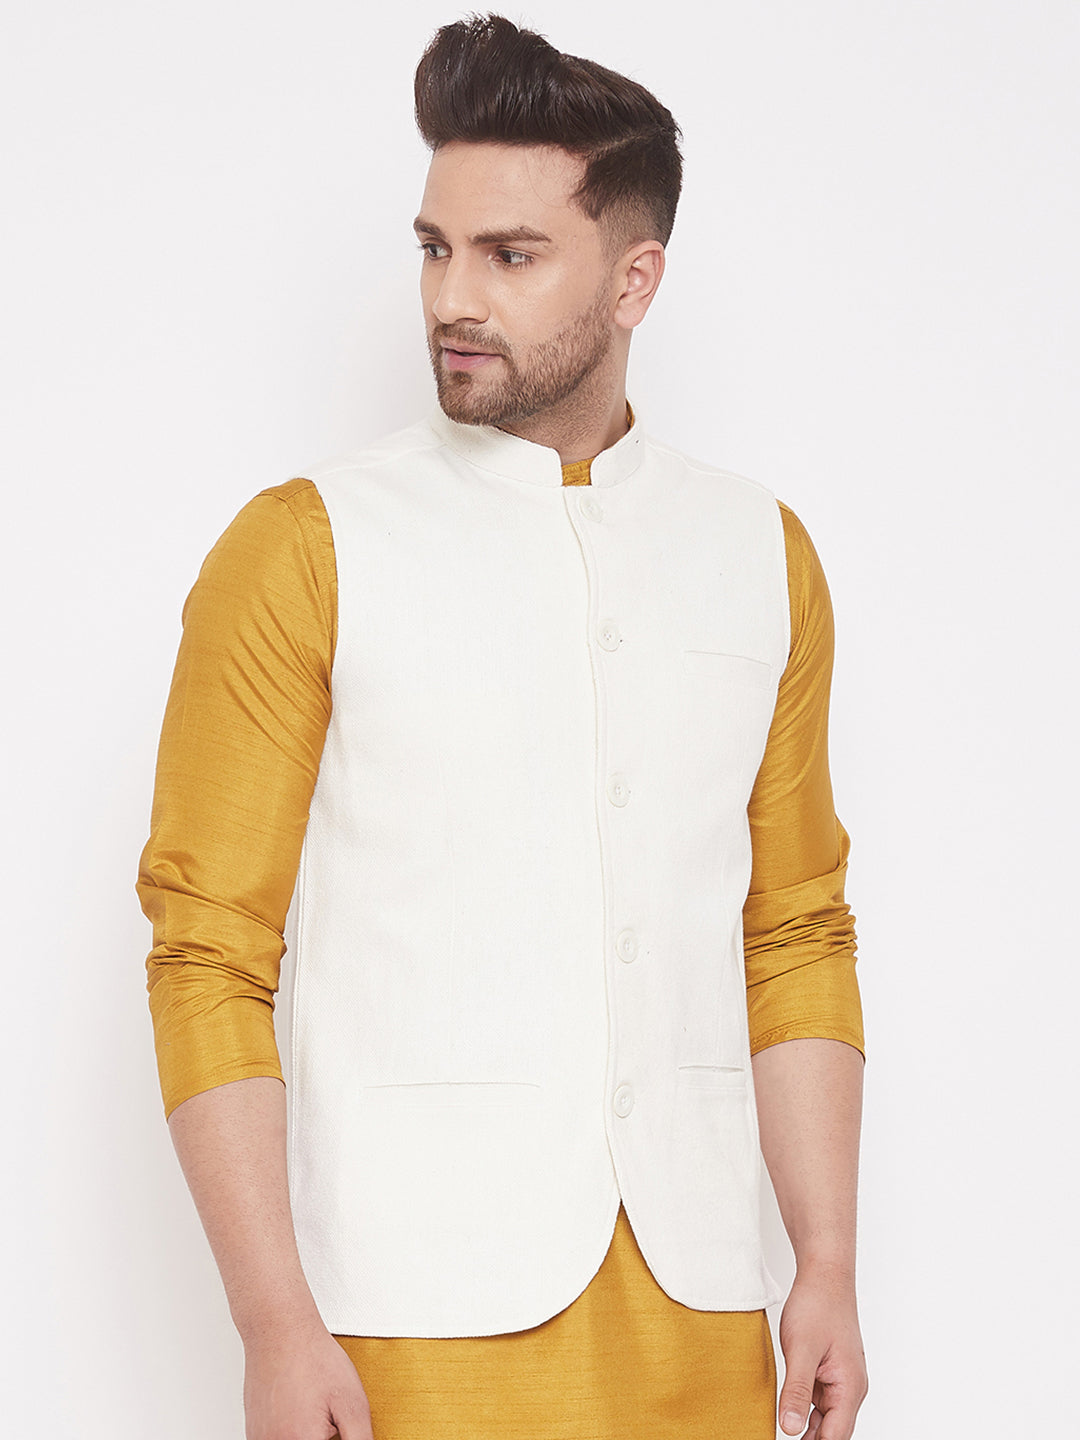 Men's White Cotton Linen Nehru Jacket - Even Apparels